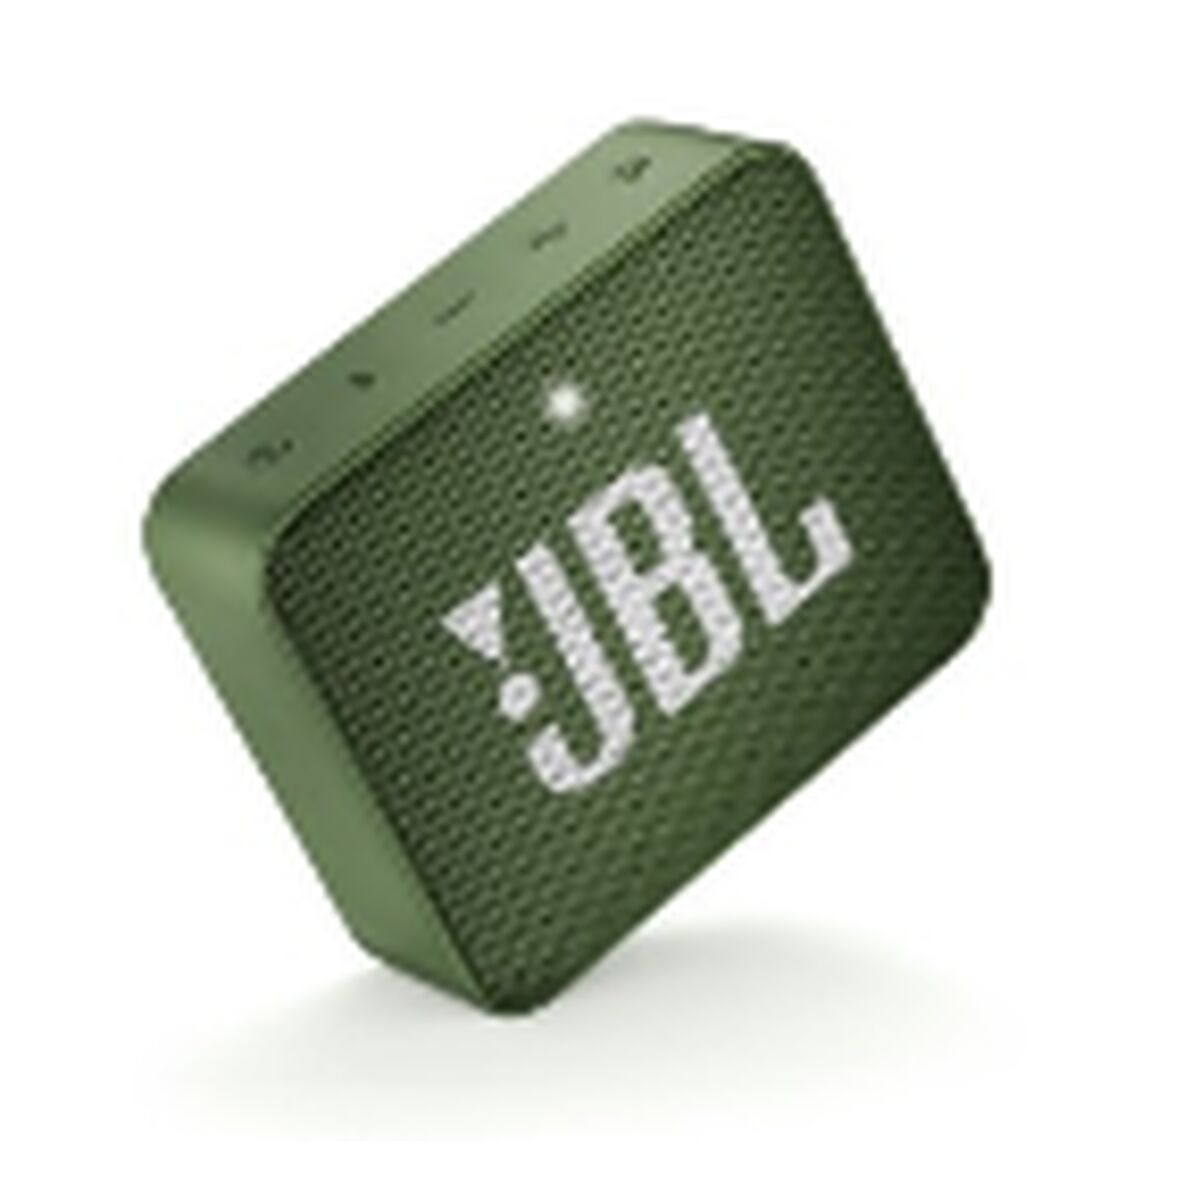 Altoparlante Bluetooth Portatile JBL GO 2  Verde 3 W